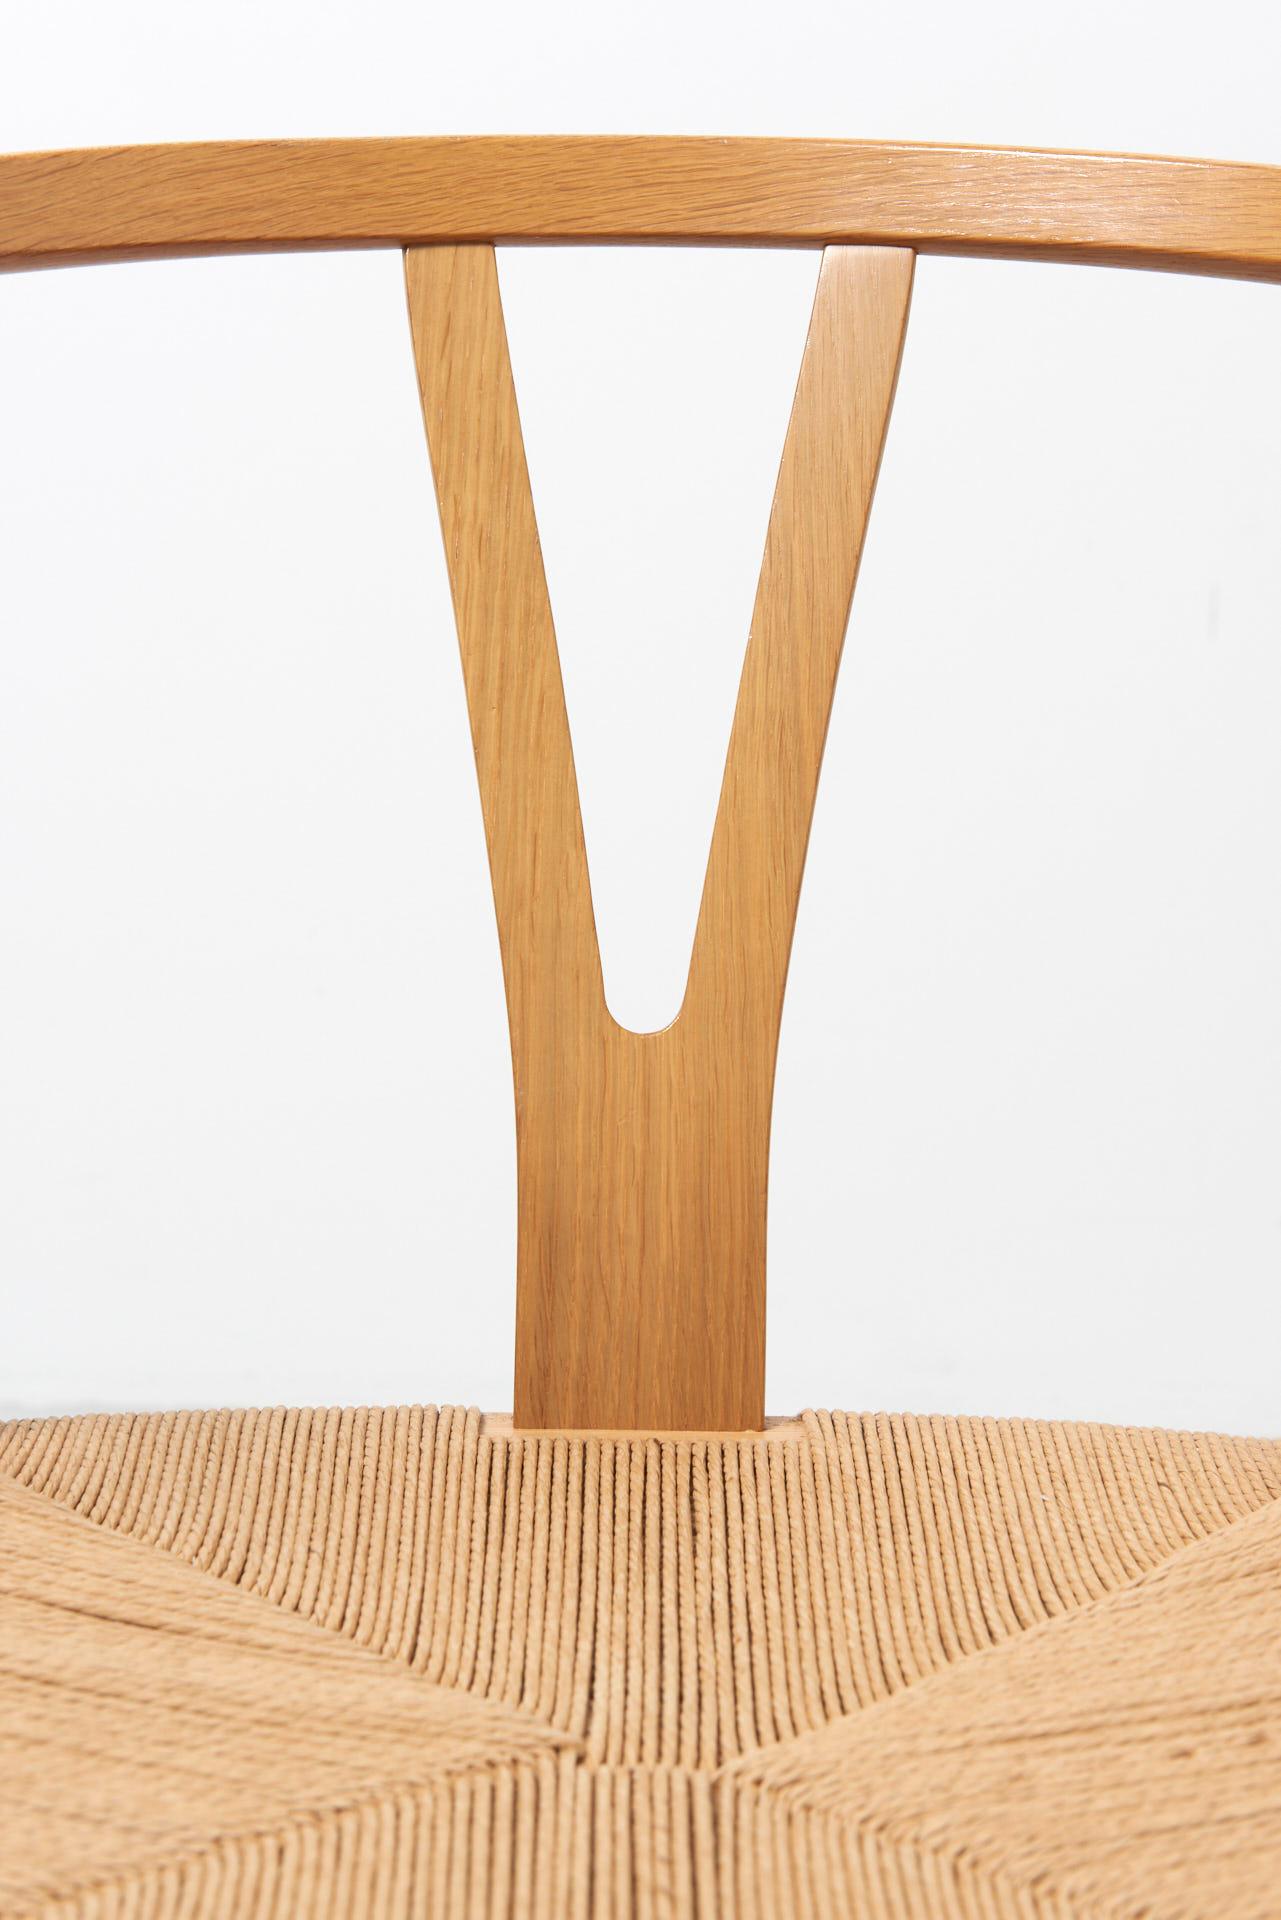 4 'Wishbone' Chairs in Oak Ch24 by Hans Wegner for Carl Hansen 1